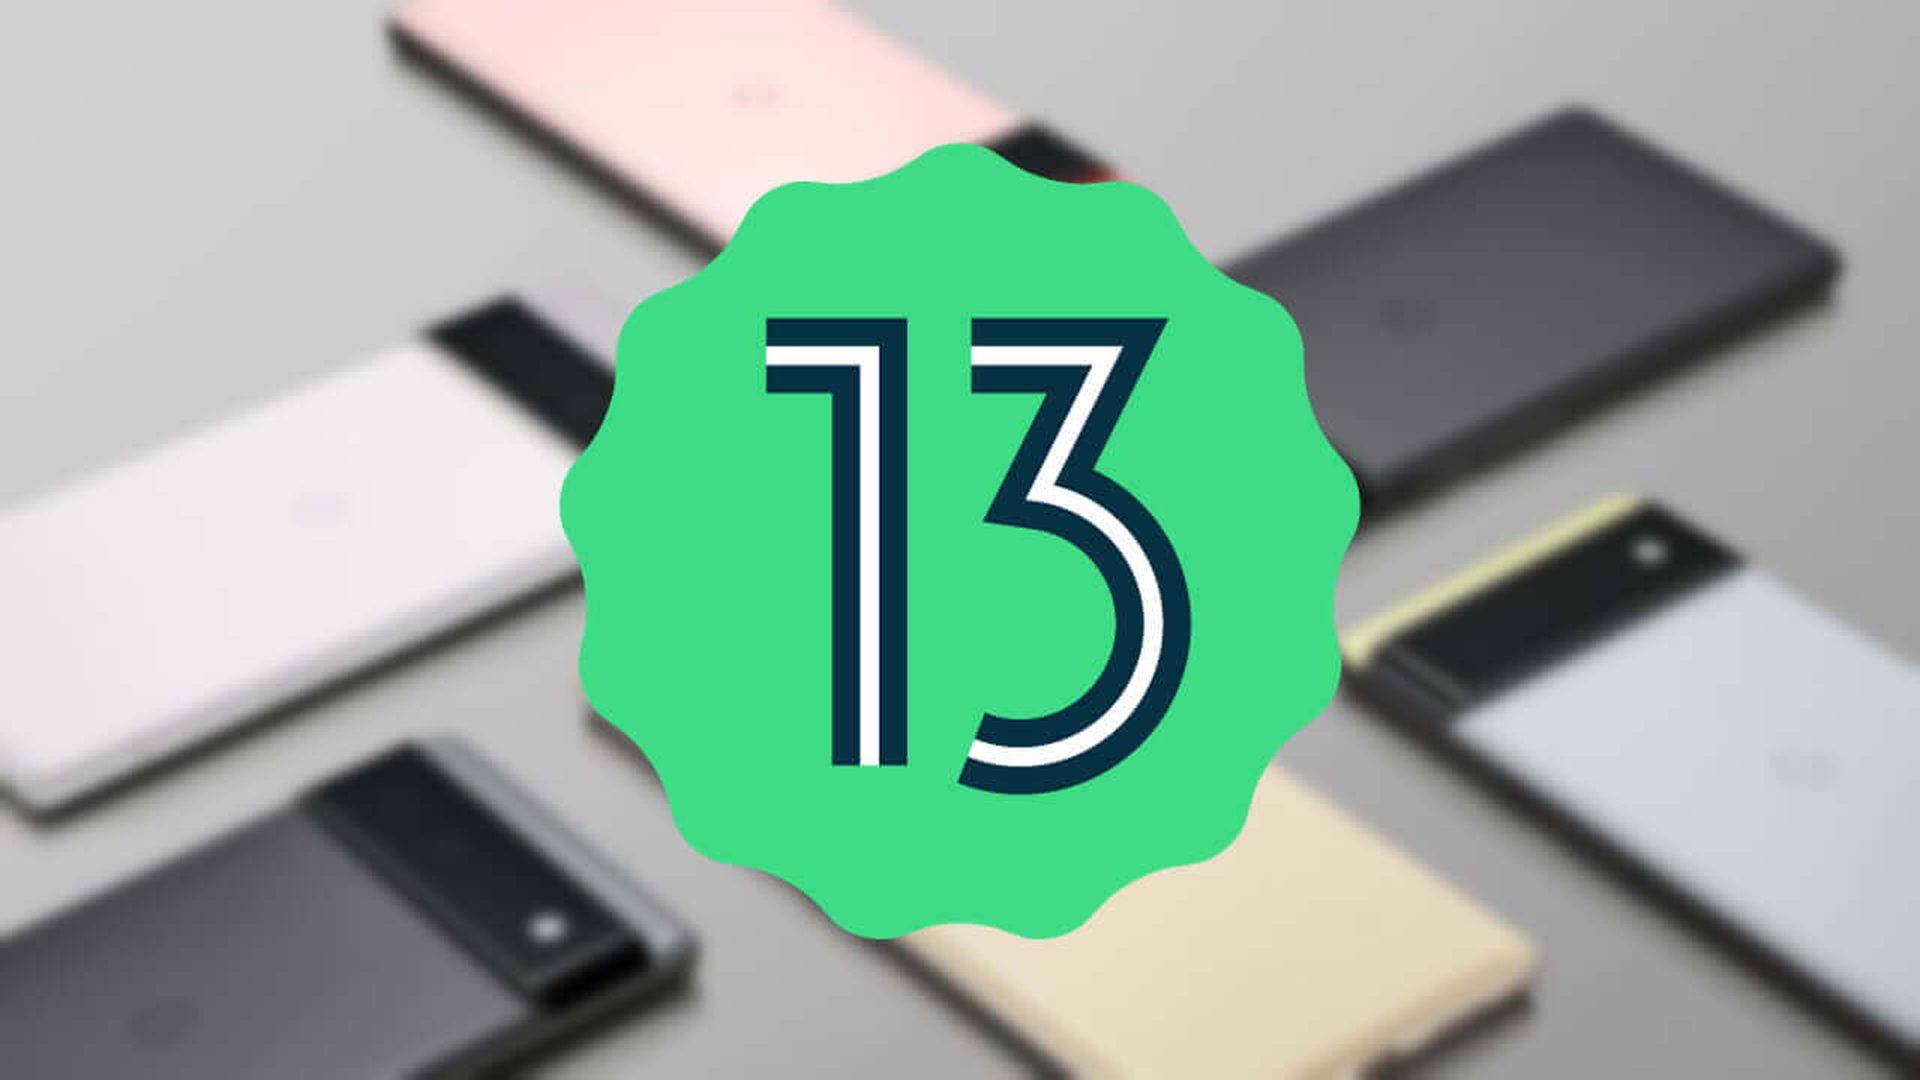 La version bêta d'Android 13 est sortie : nouvelles fonctionnalités, appareils pris en charge et plus encore